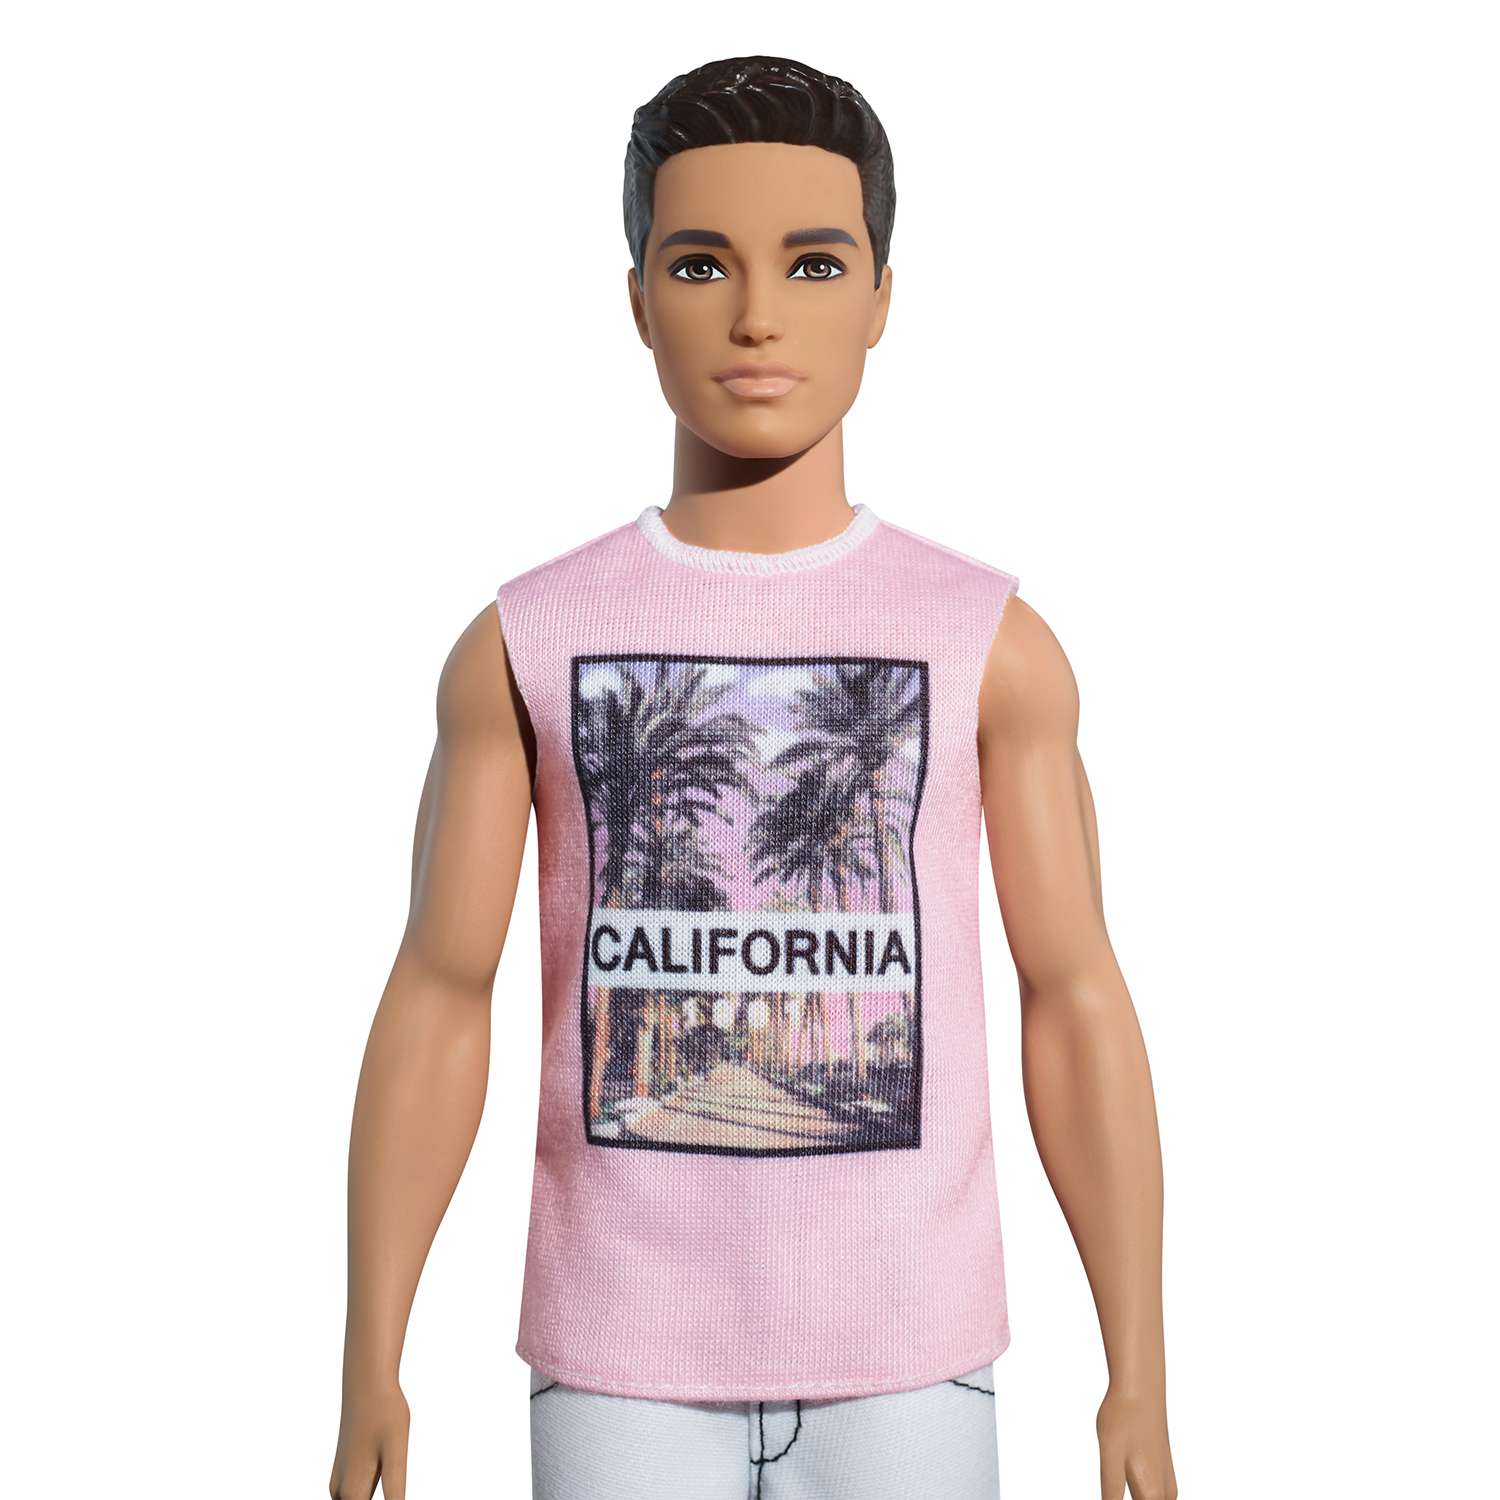 Кукла Barbie Кен Крутая калифорния FJF75 DWK44 - фото 2